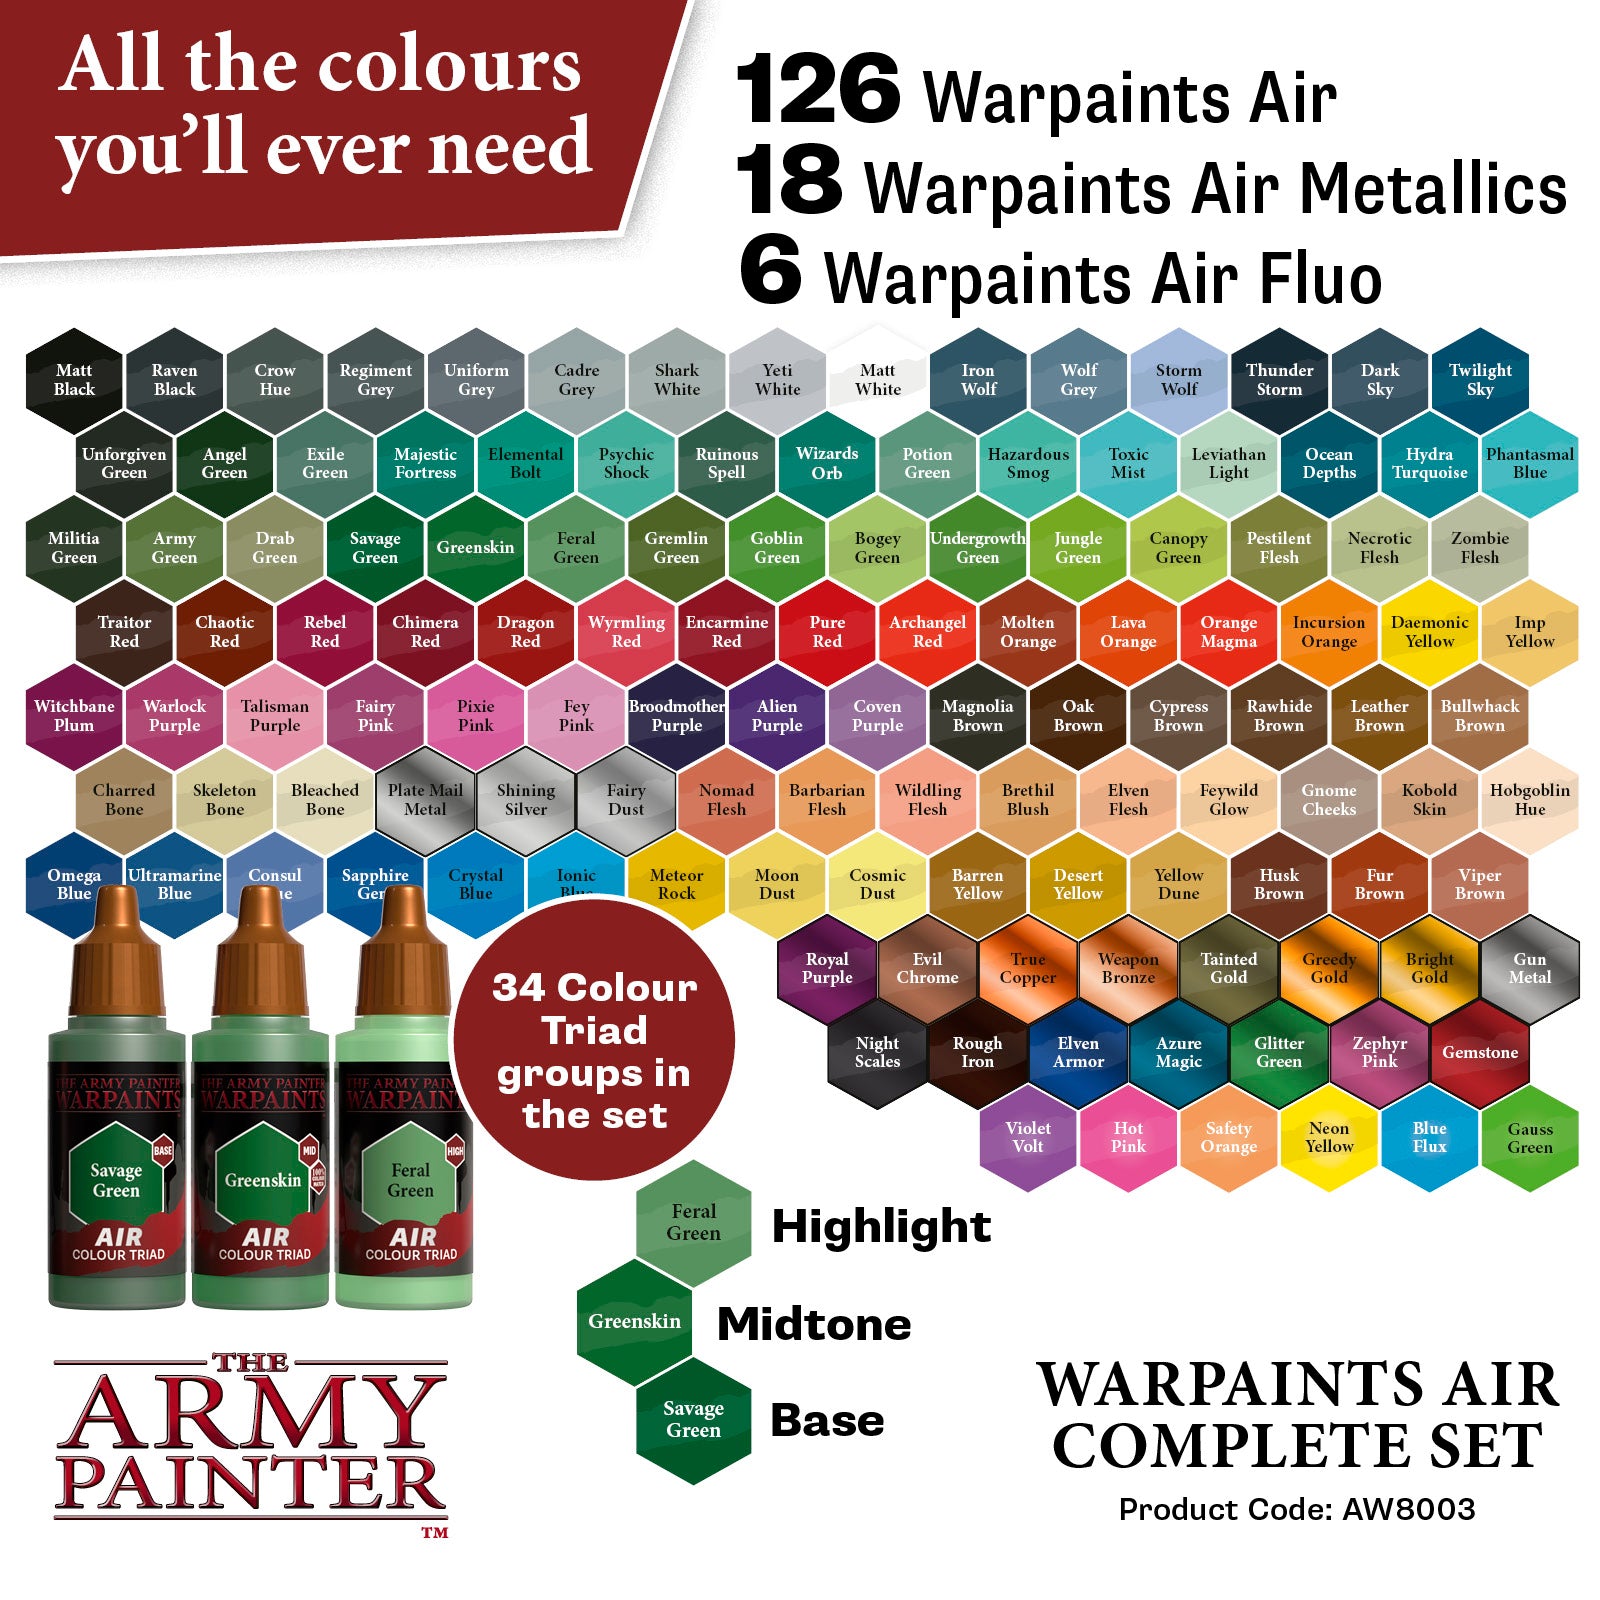 The Army Painter - Warpaints: Metallic Colours Paint Set